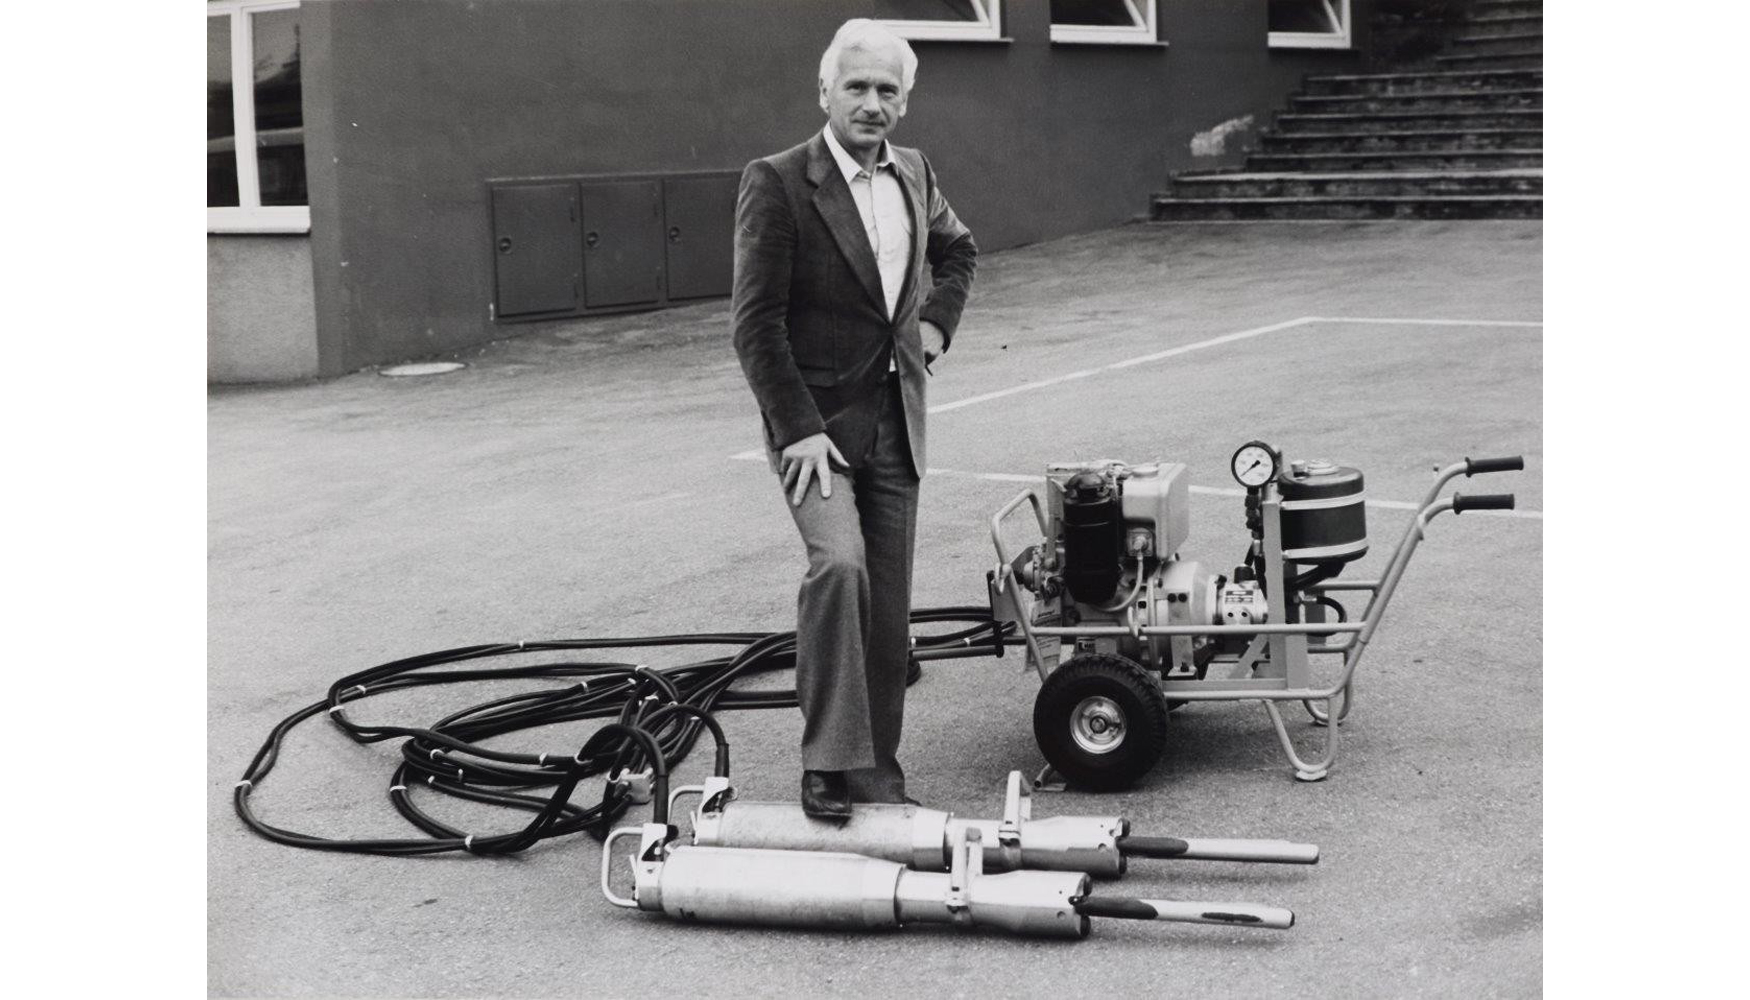 Helmut Darda, inventor del cilindro de quebrantacin de roca y hormign, que contina siendo legendario...